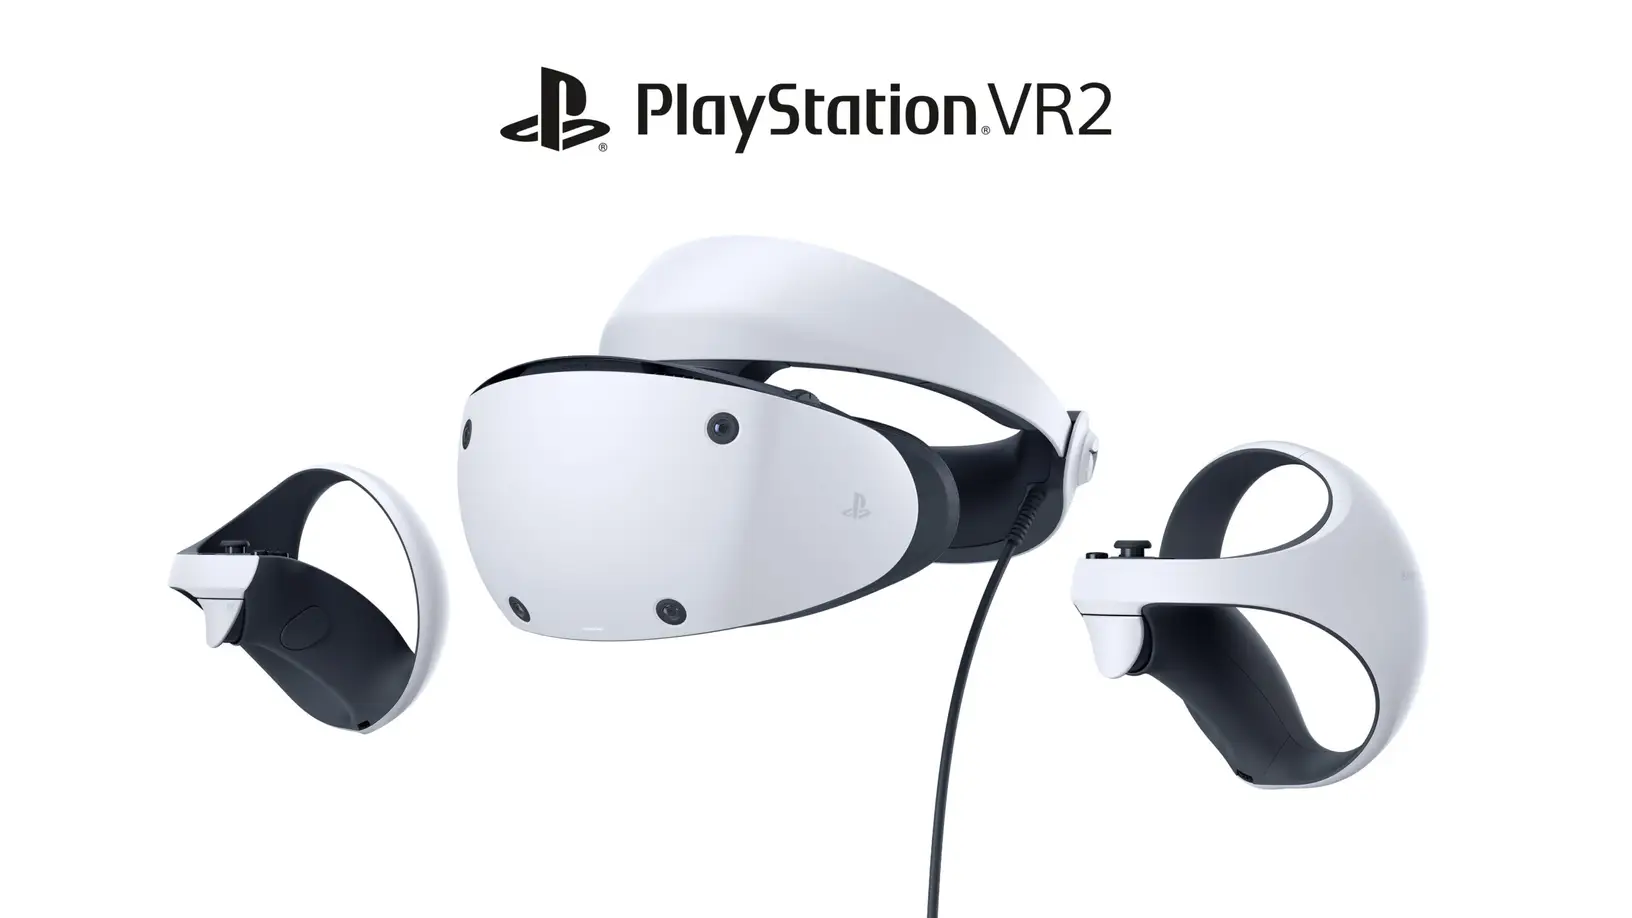 تقارير: أداء ضعيف لطرفية PlayStation VR2 وتخفيض السعر ضروري لتفادي الأداء الكارثي!